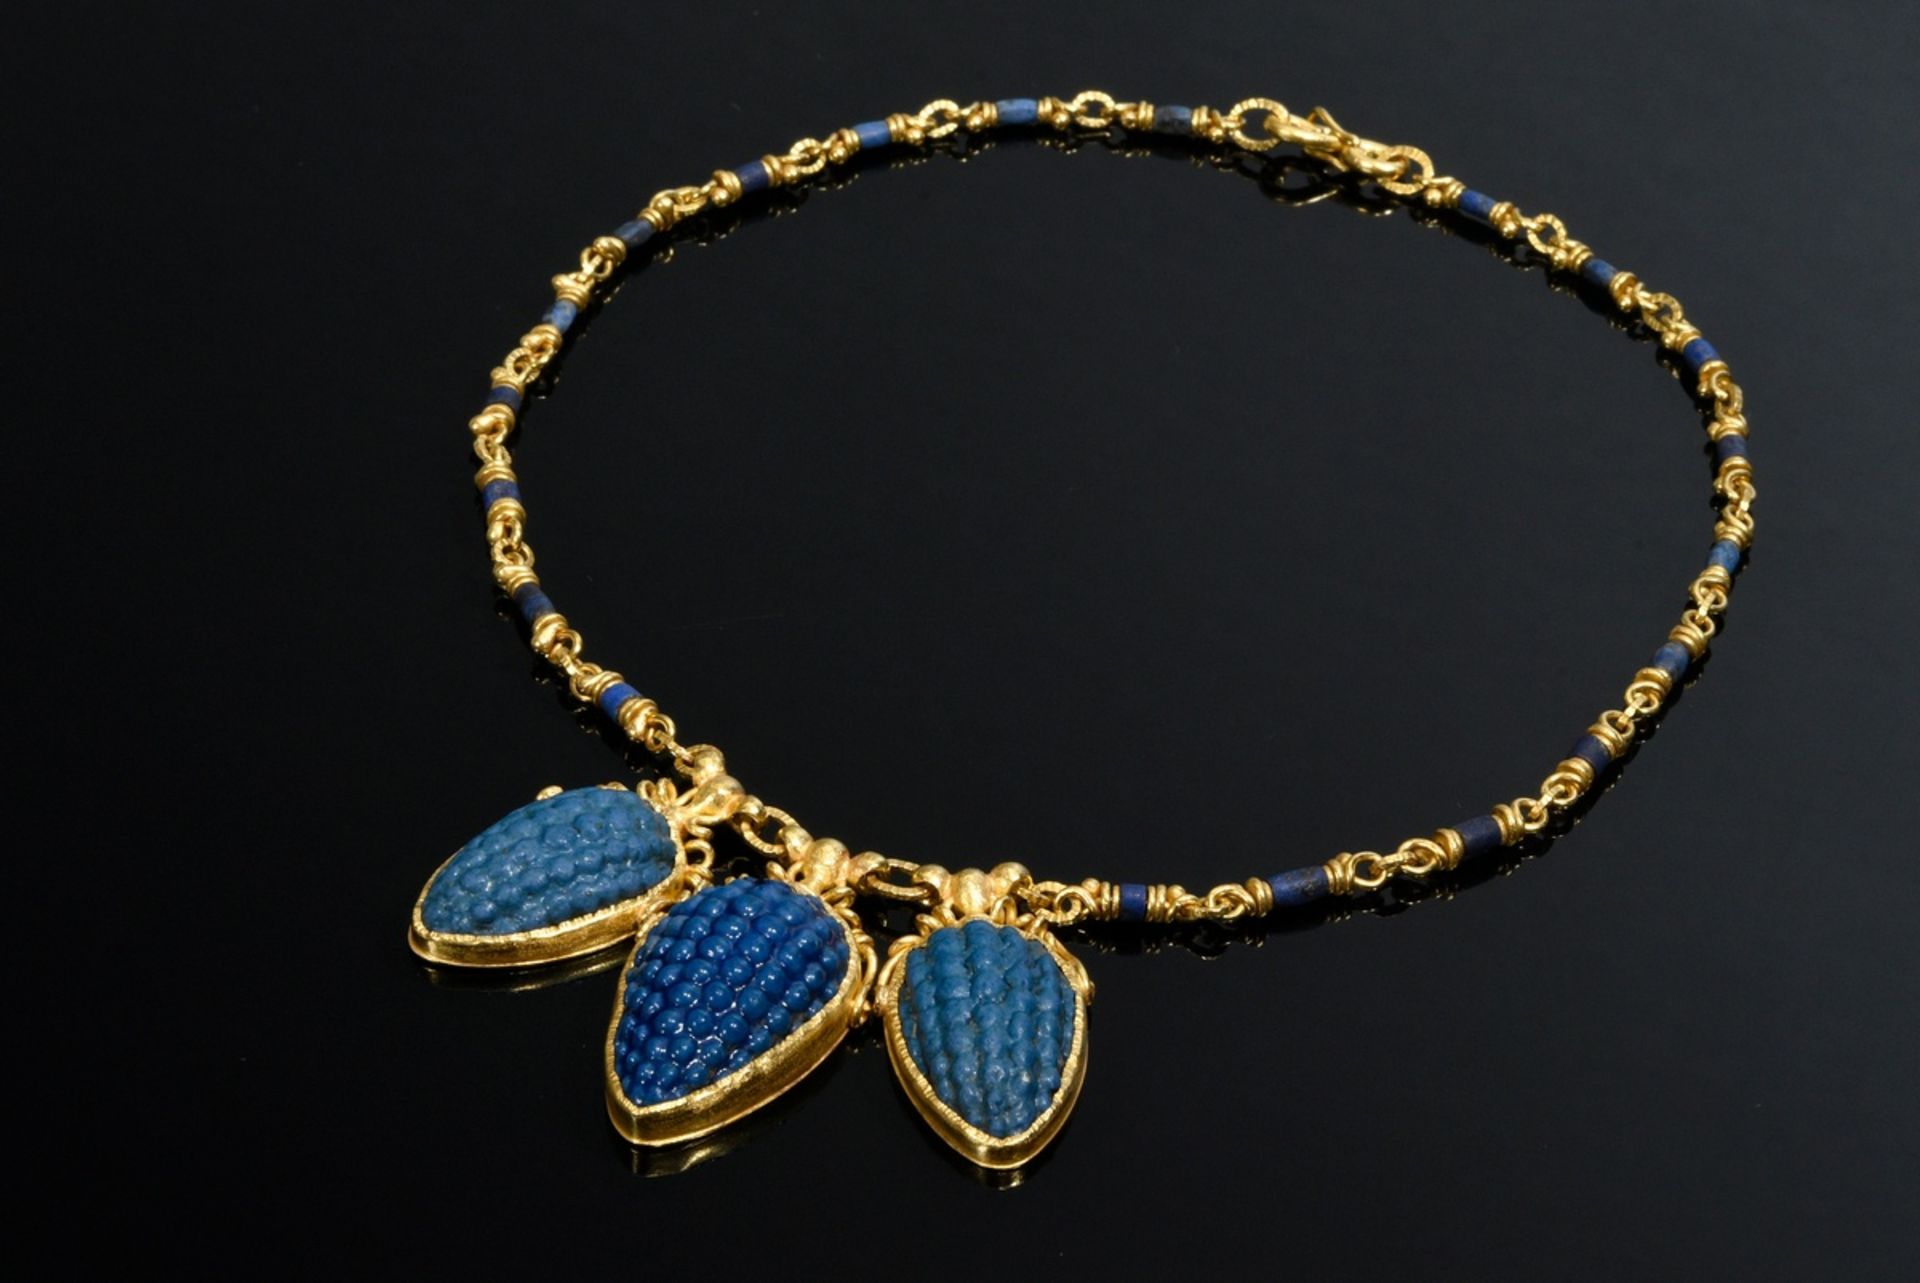 Gelbgold 917 Collier mit Lapislazuli Perlen und 3 blauglasierten Fayence Weintrauben, Ägypten um 13